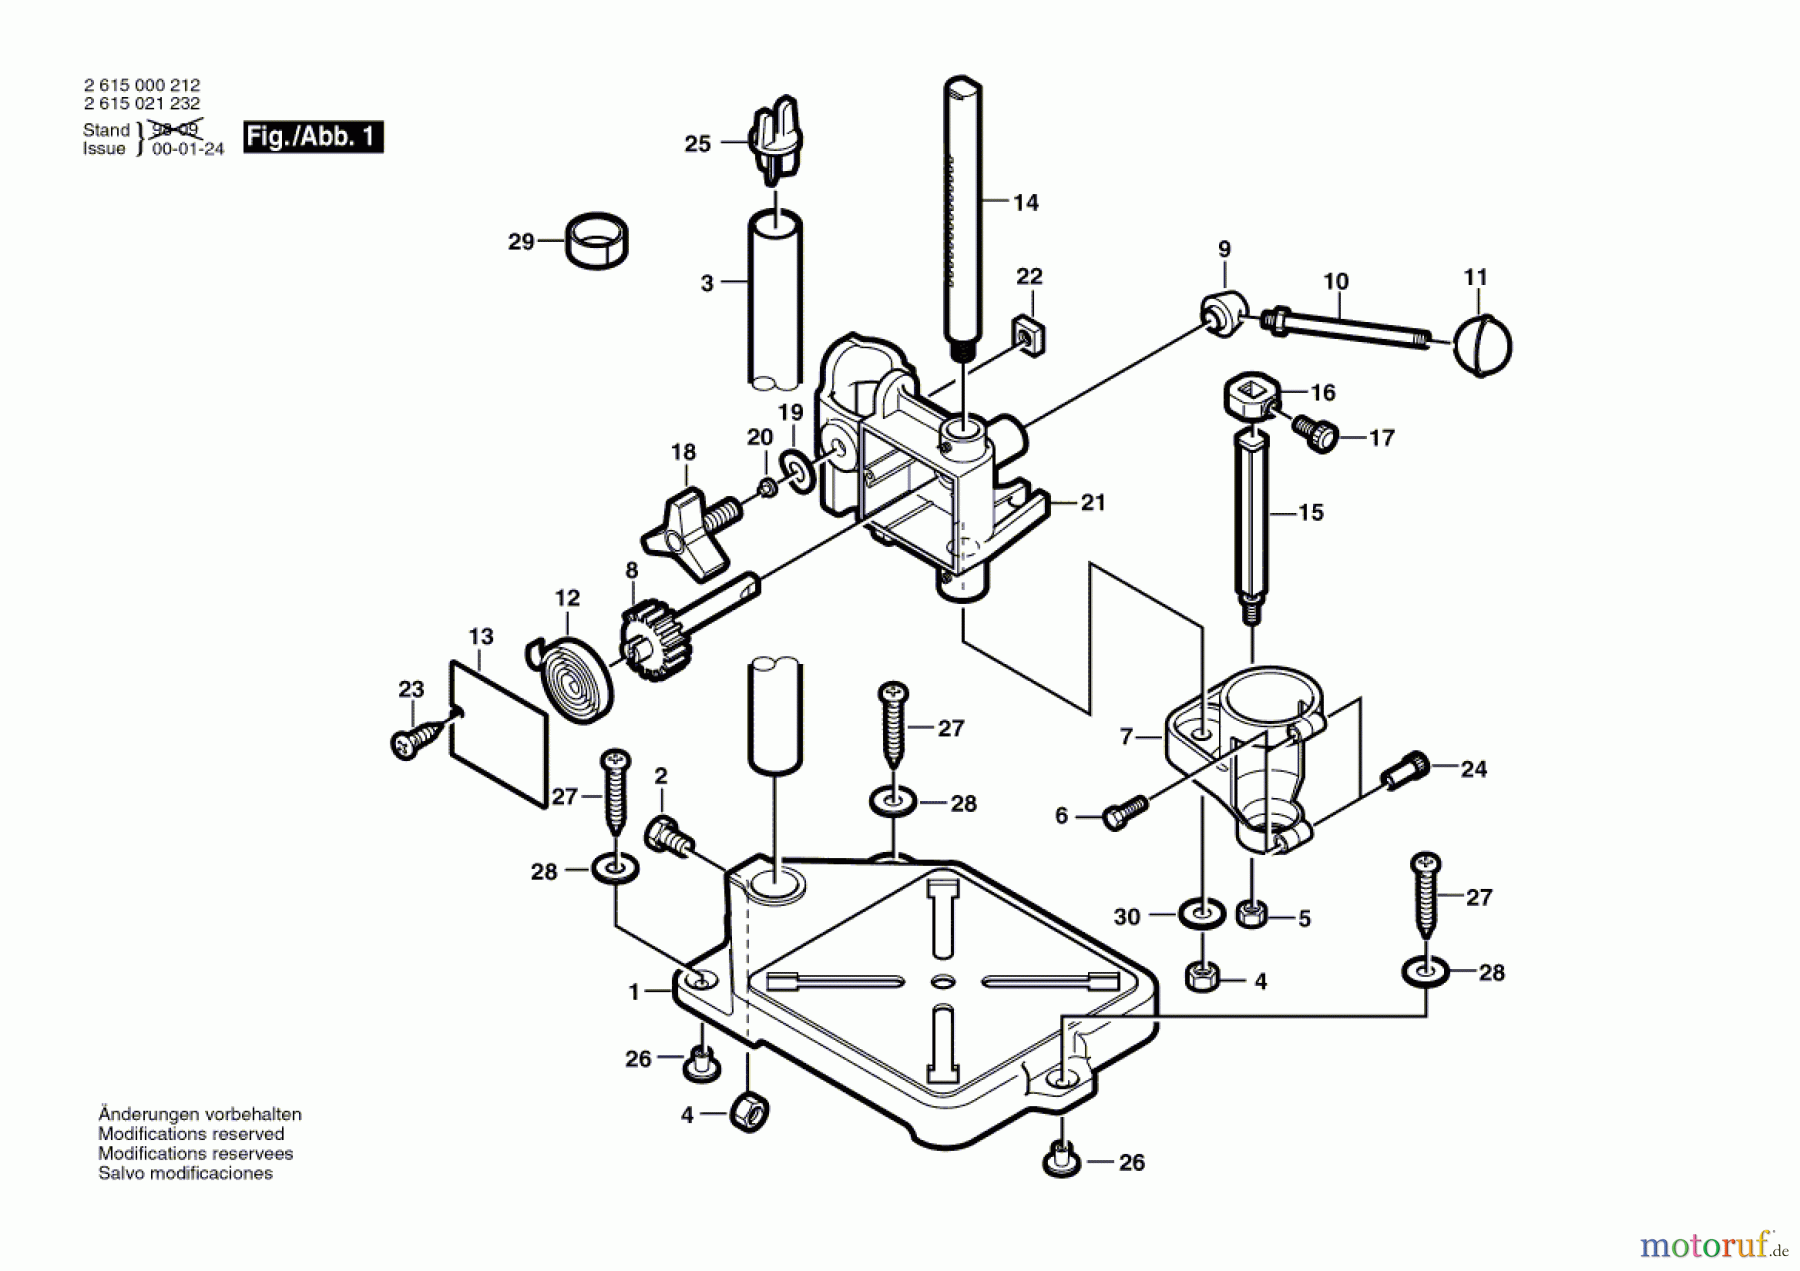  Bosch Werkzeug Maschinenschraubstock ---- Seite 1